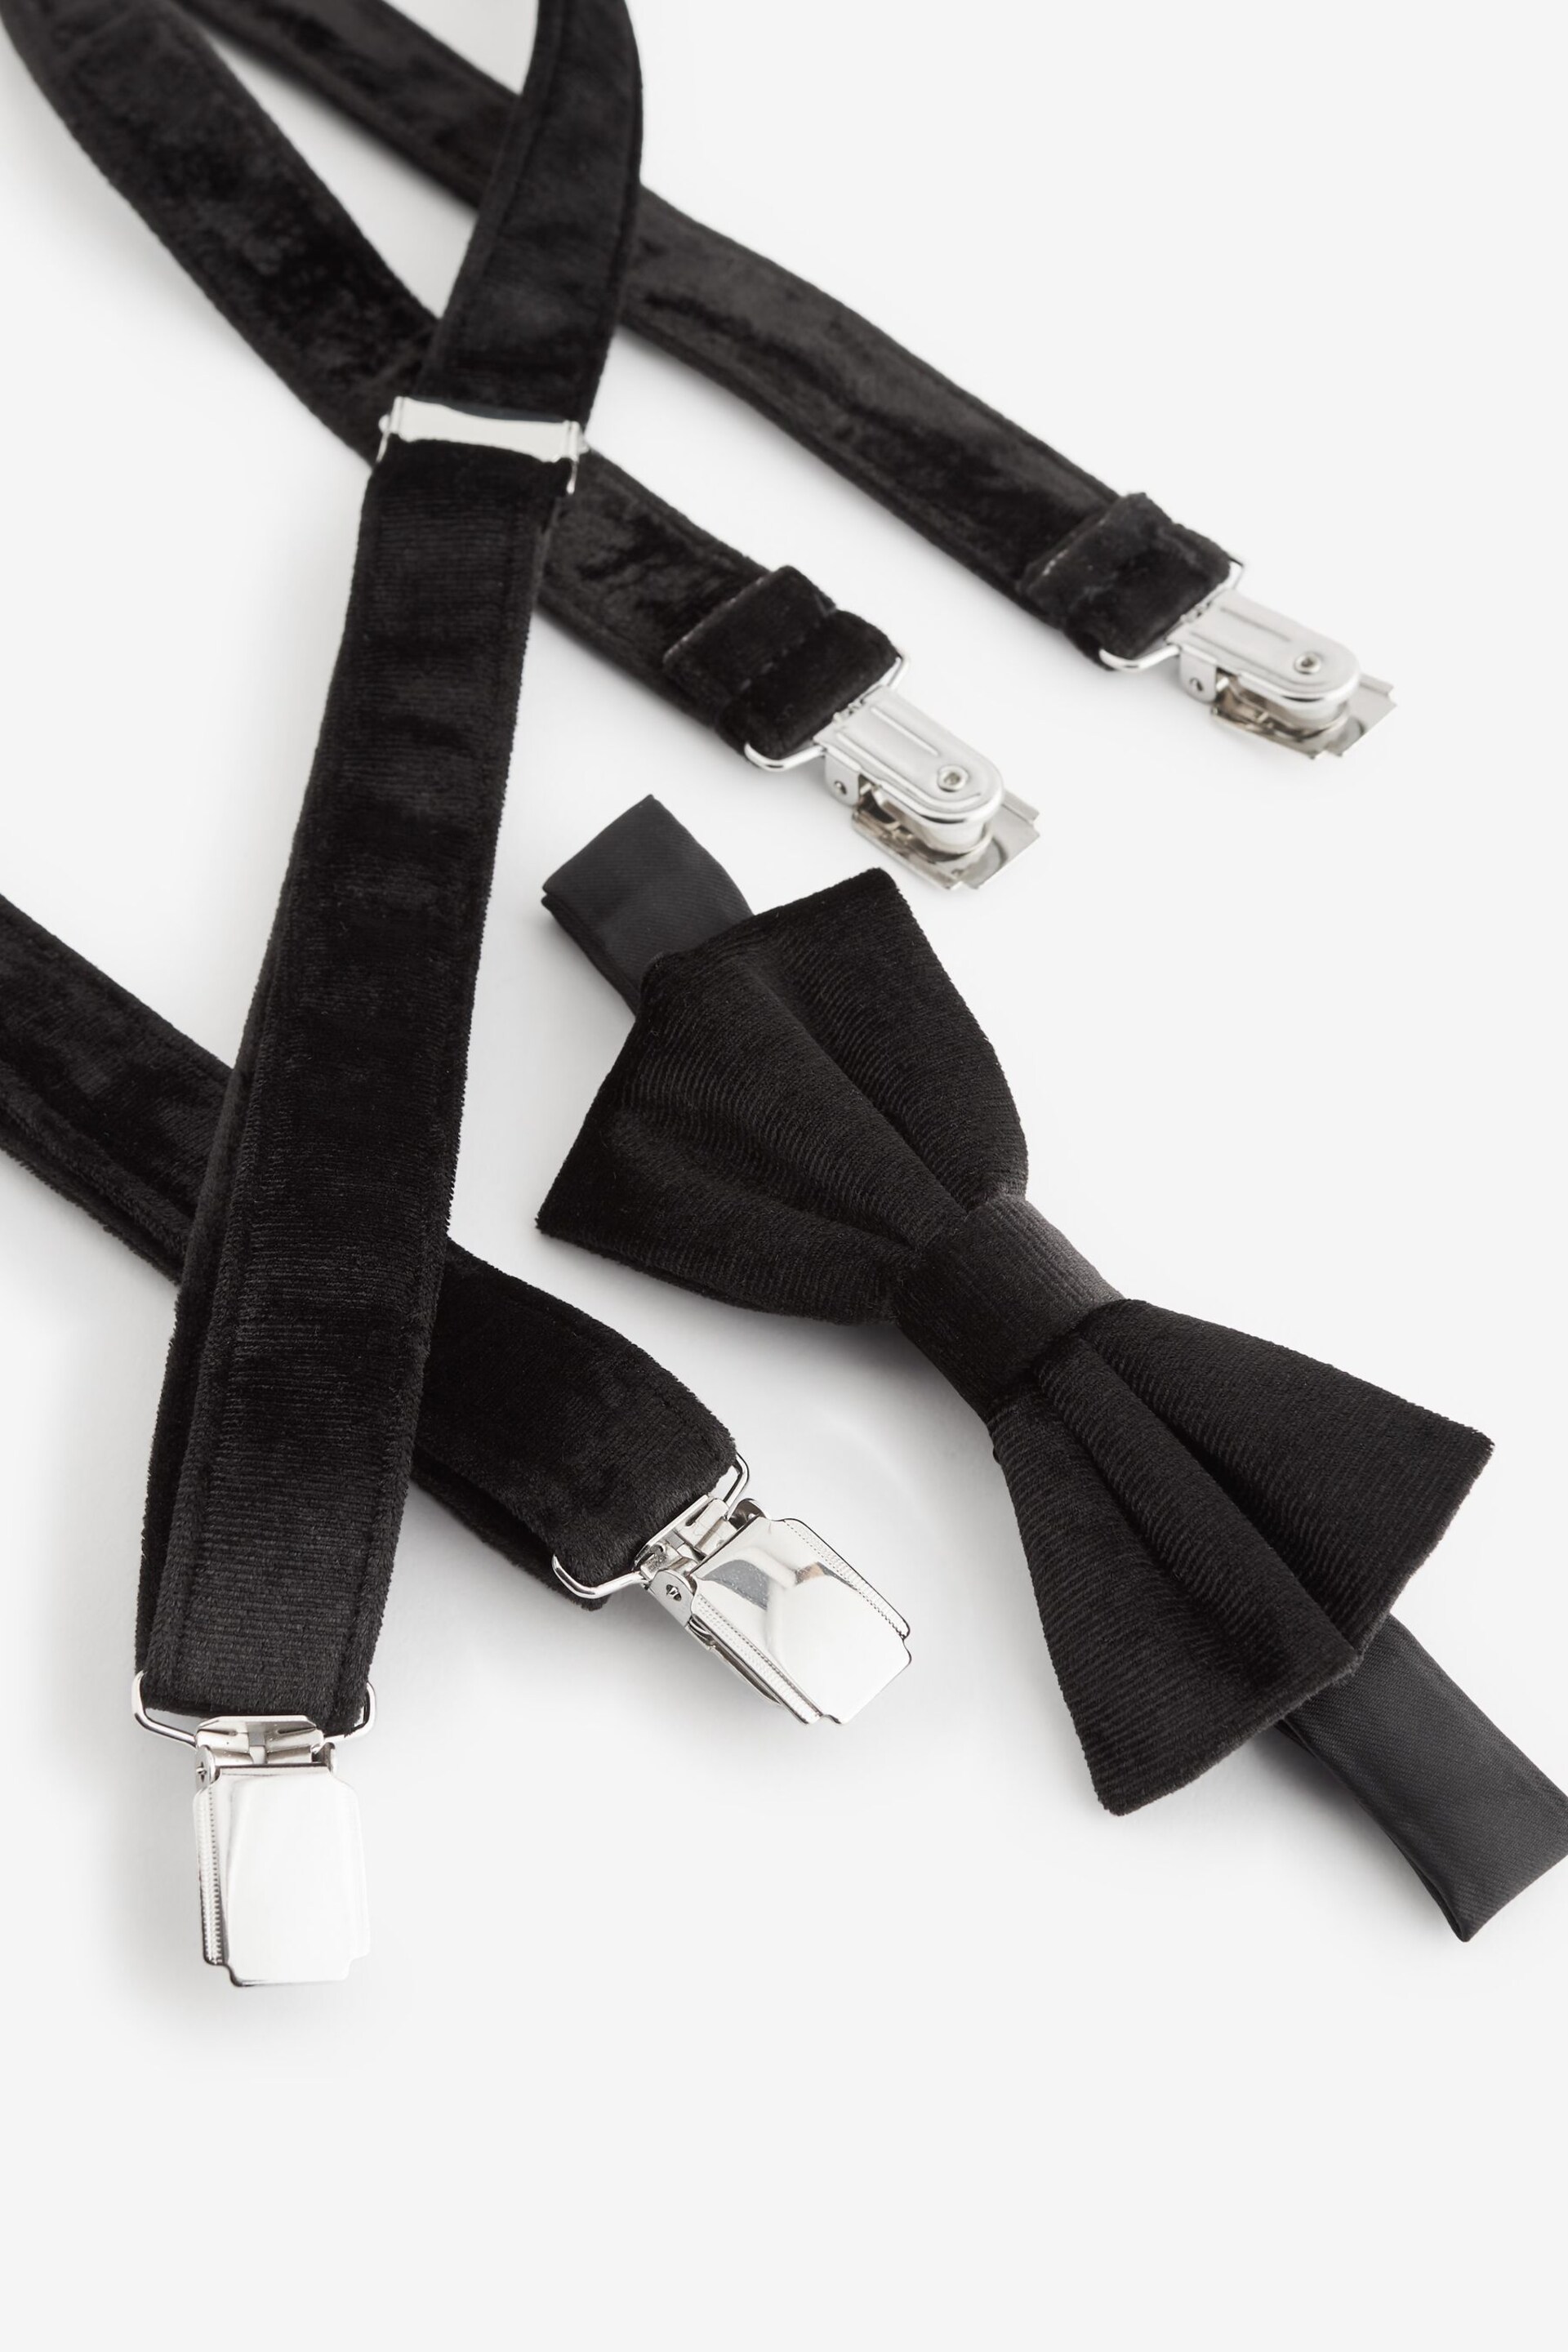 Black Velvet Bow Tie and Braces - Image 5 of 5